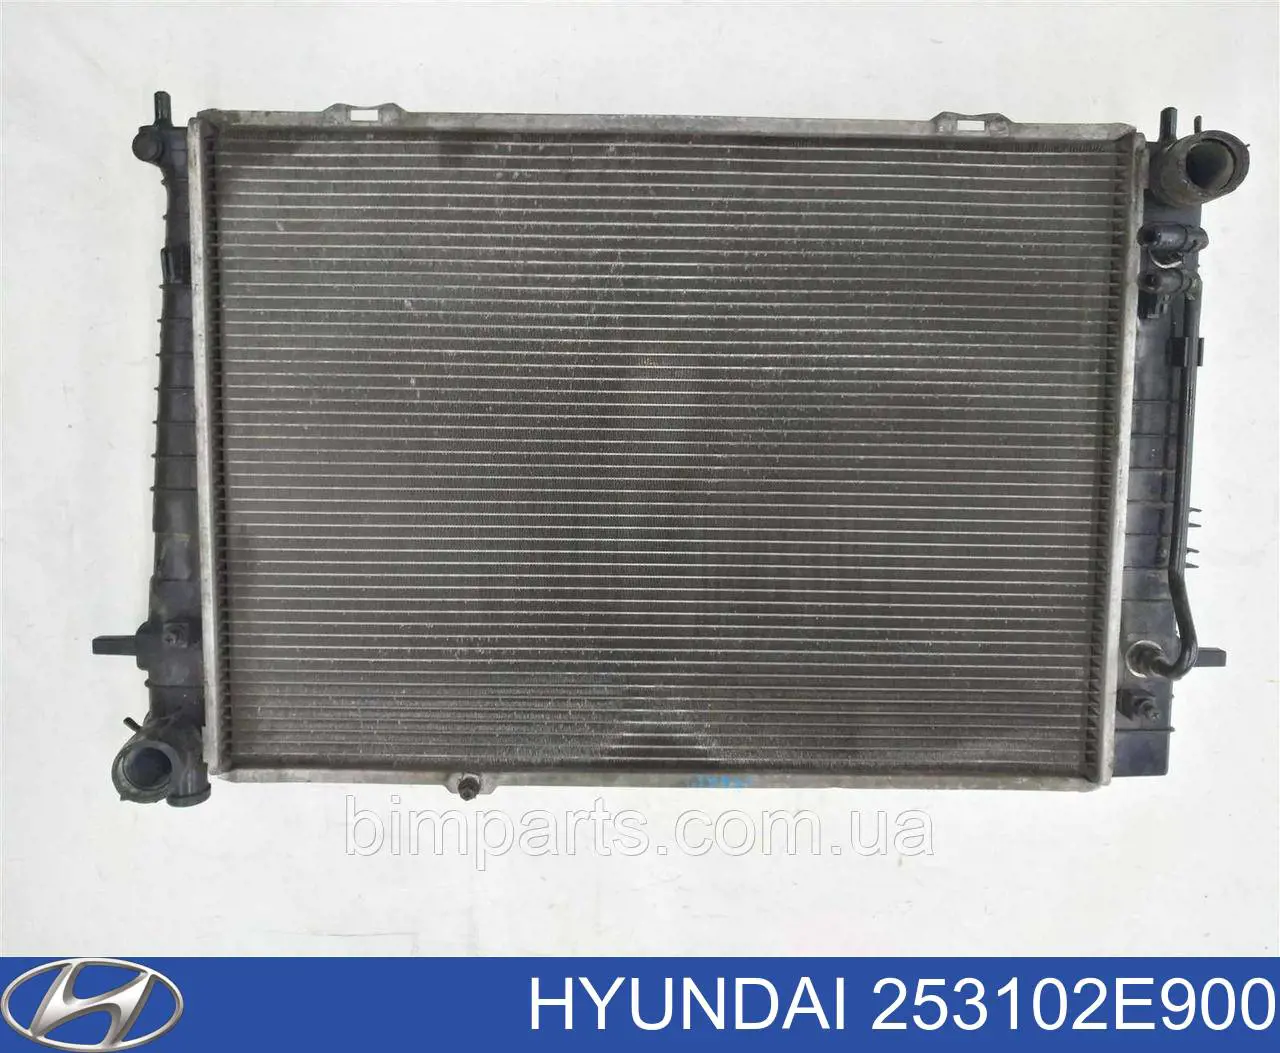 Радиатор охлаждения двигателя HYUNDAI 253102E900